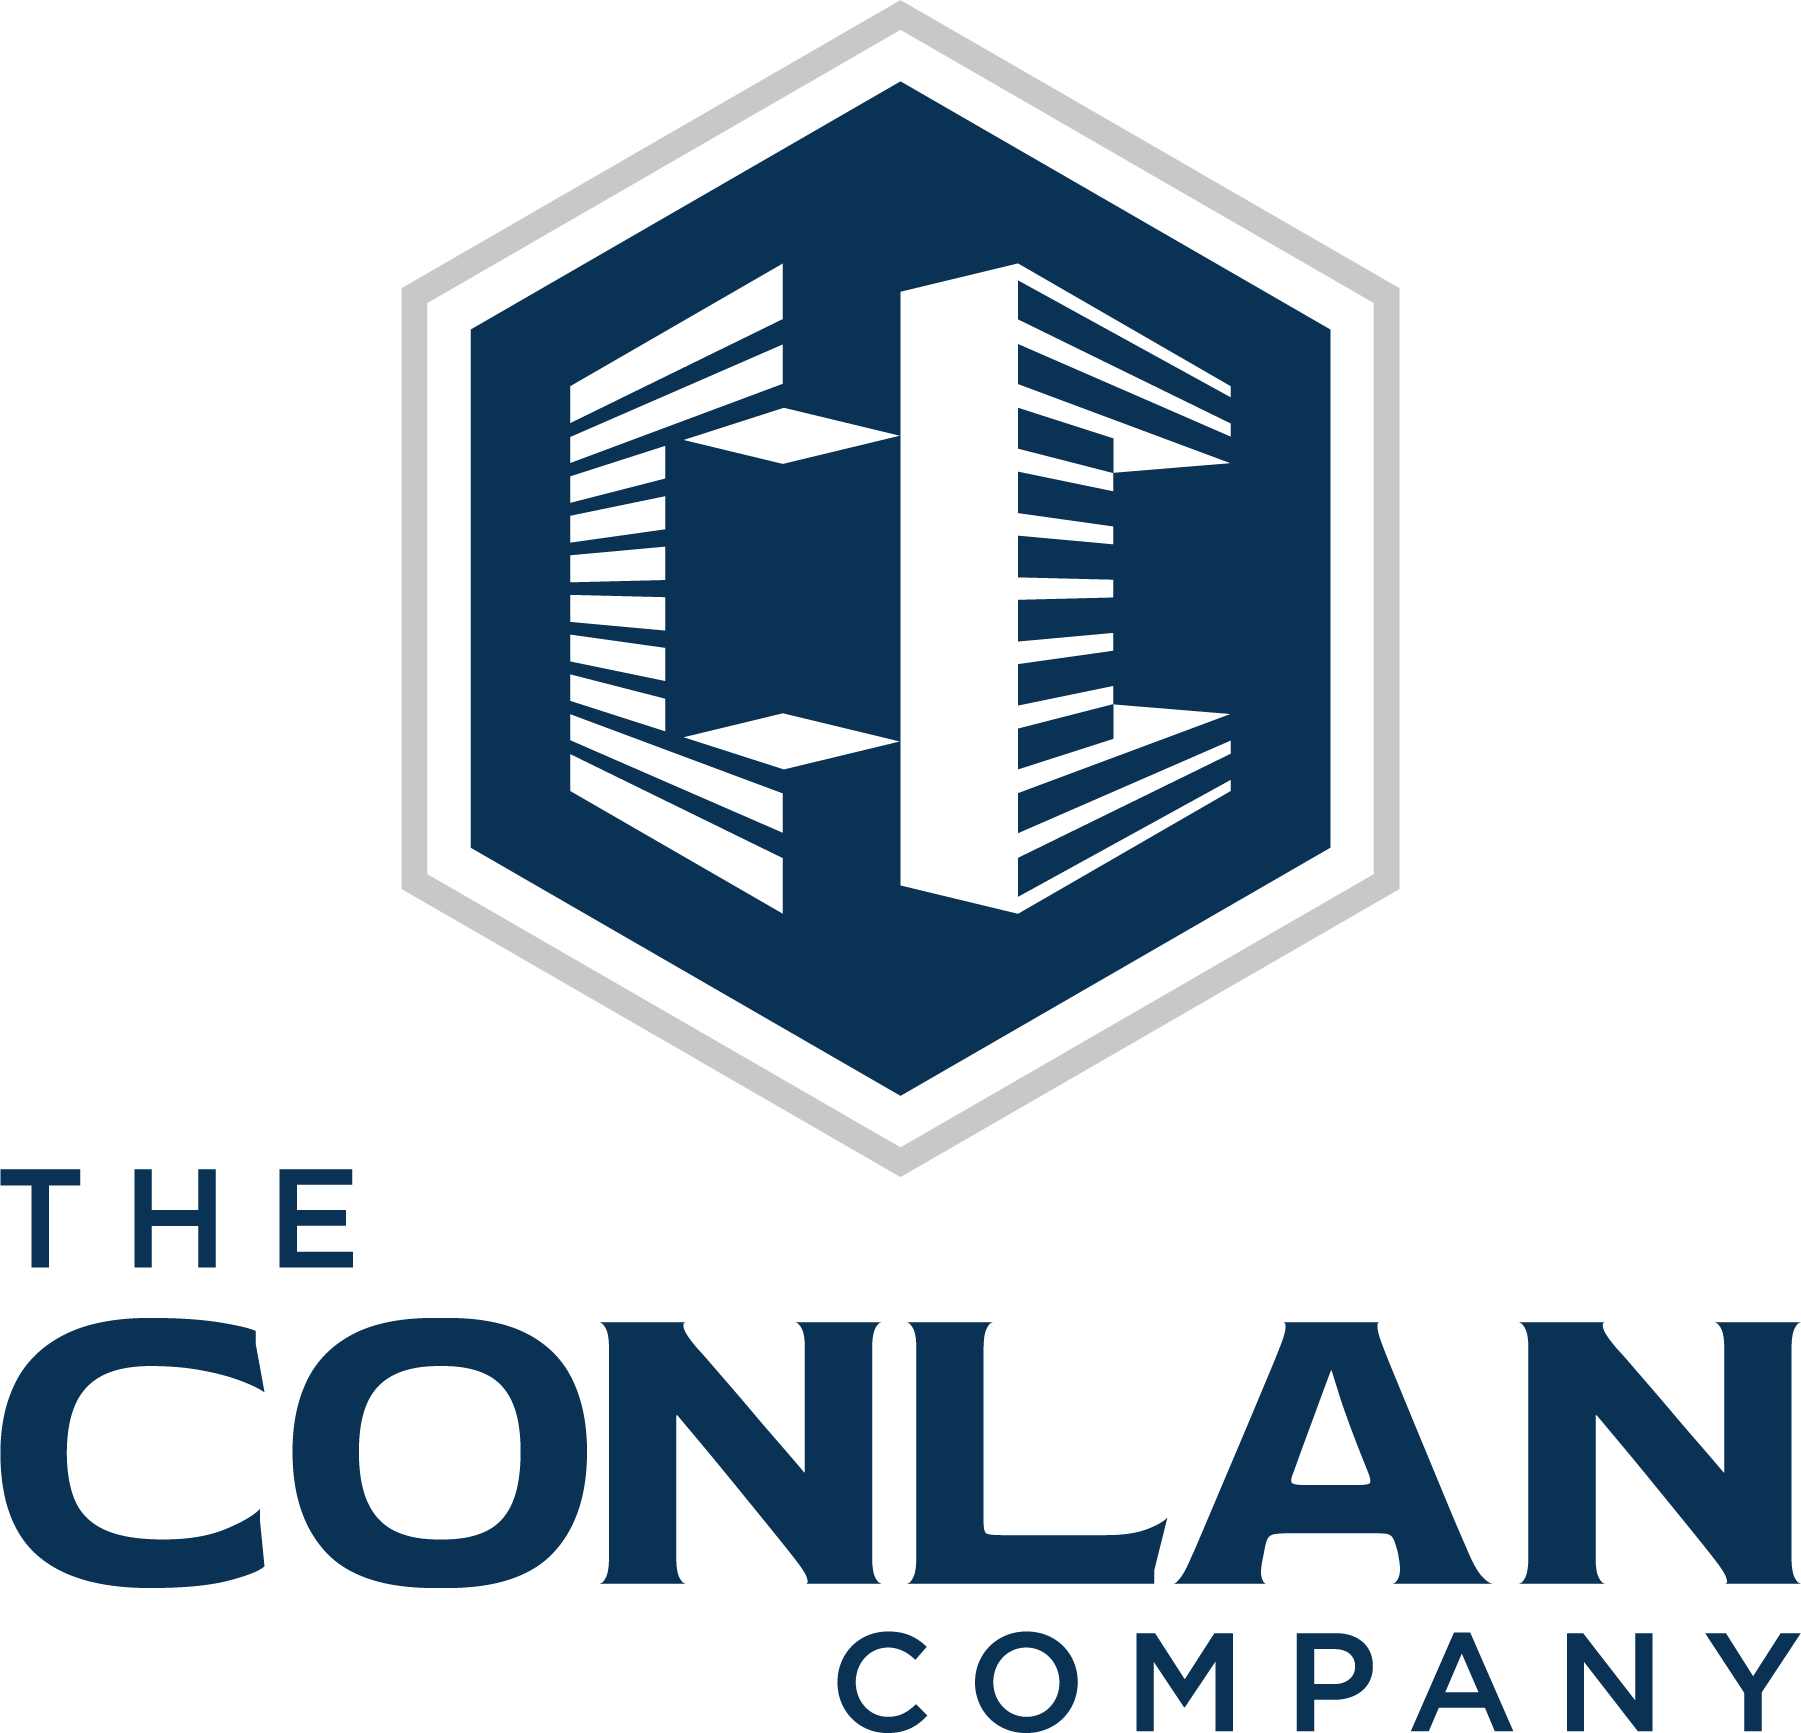 The Conlan Company logo